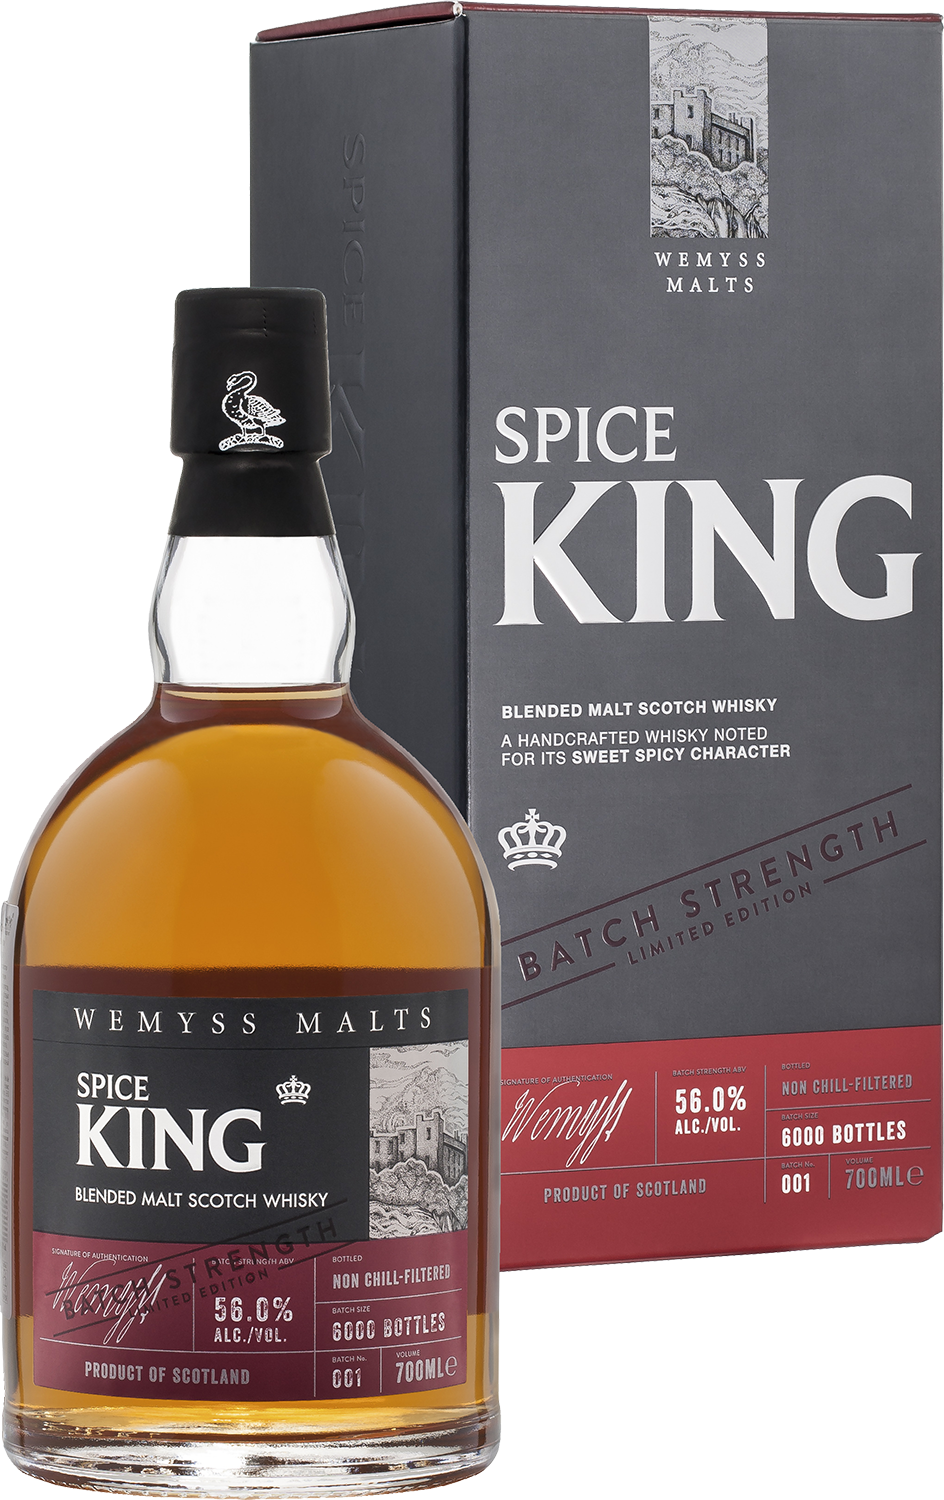 Spice King Batch Strength Wemyss Malts blended malt scotch whisky